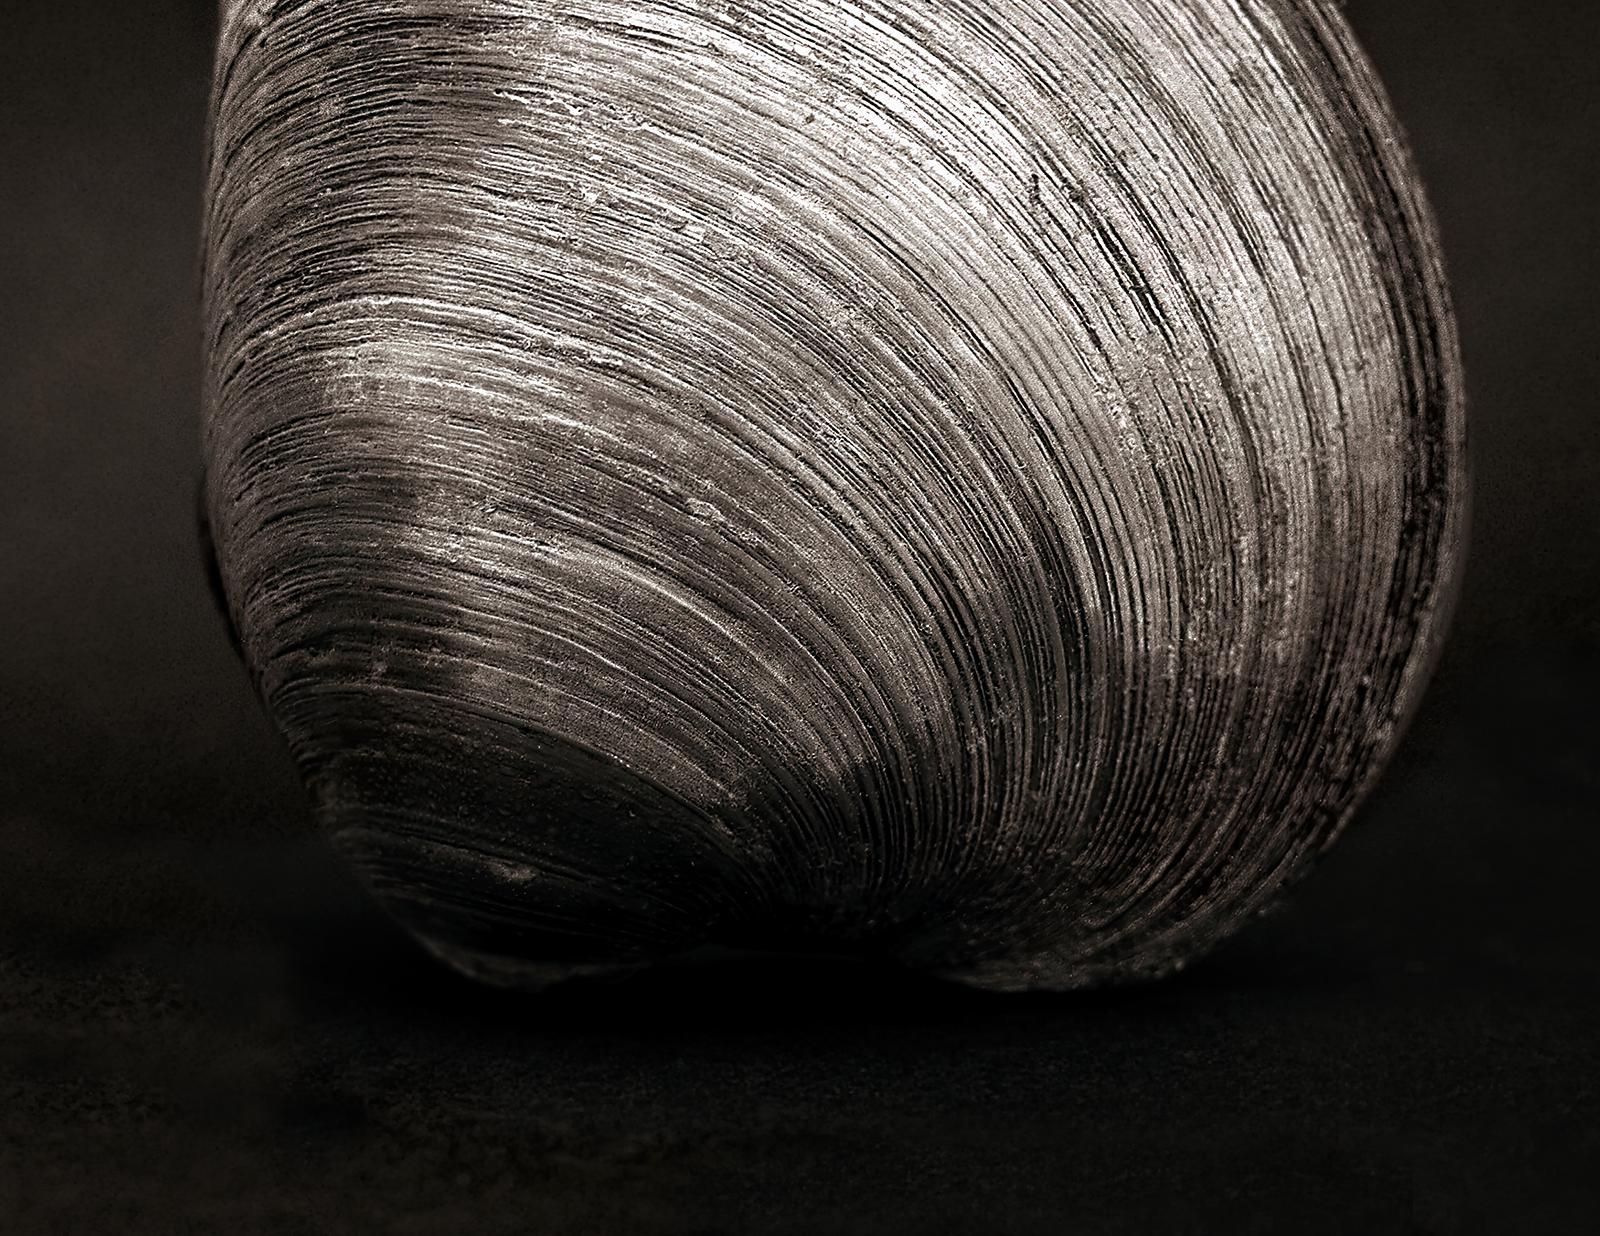 Clam - Impression d'art nature en édition limitée signée, photo en noir et blanc, Stillife - Photograph de Ian Sanderson